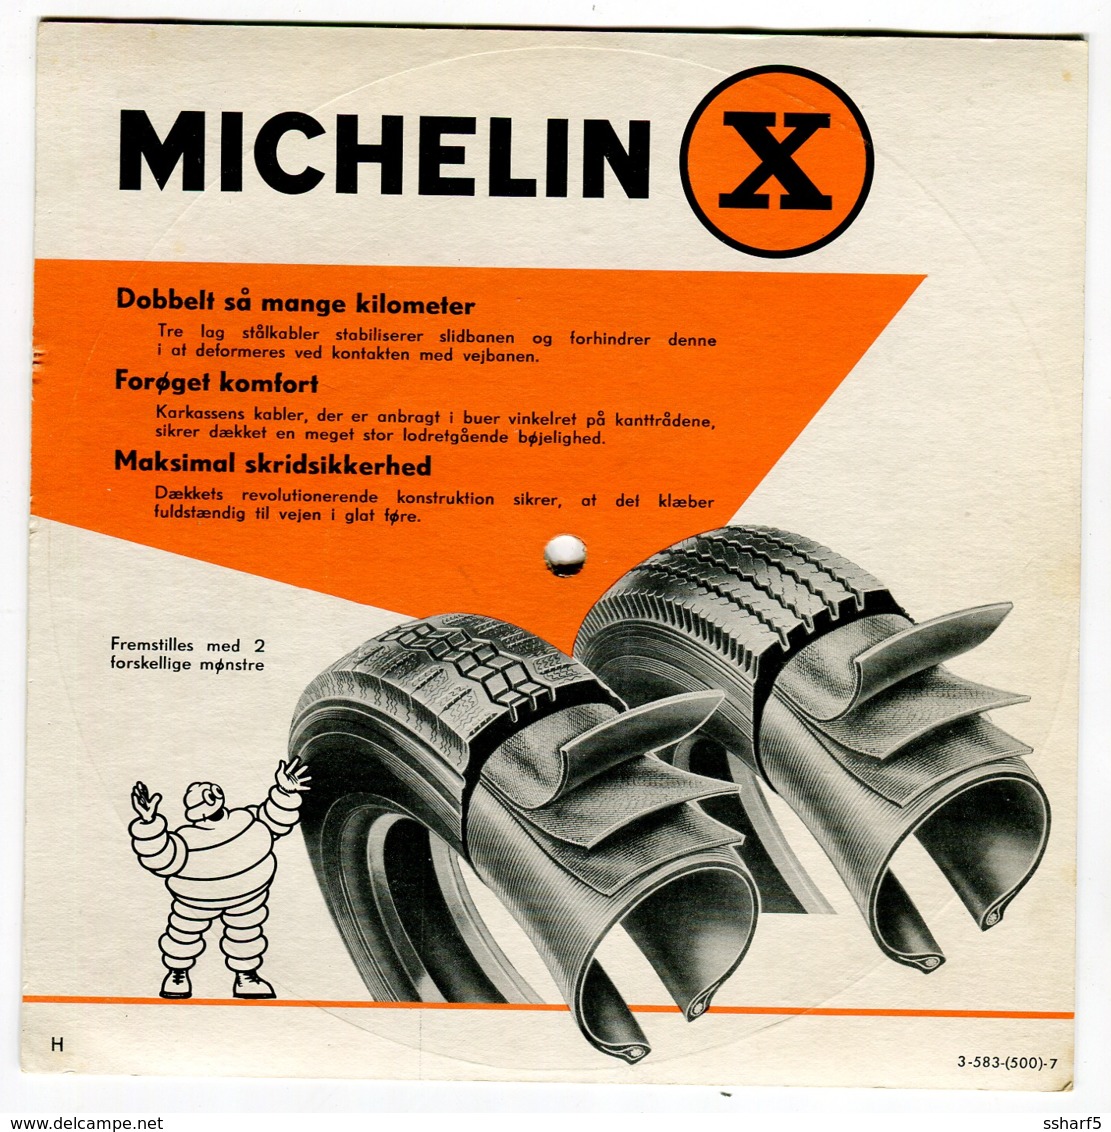 2 Disques 33 tours PROMOTION PNEUS MICHELIN en danois 1959 comme neufs très rares